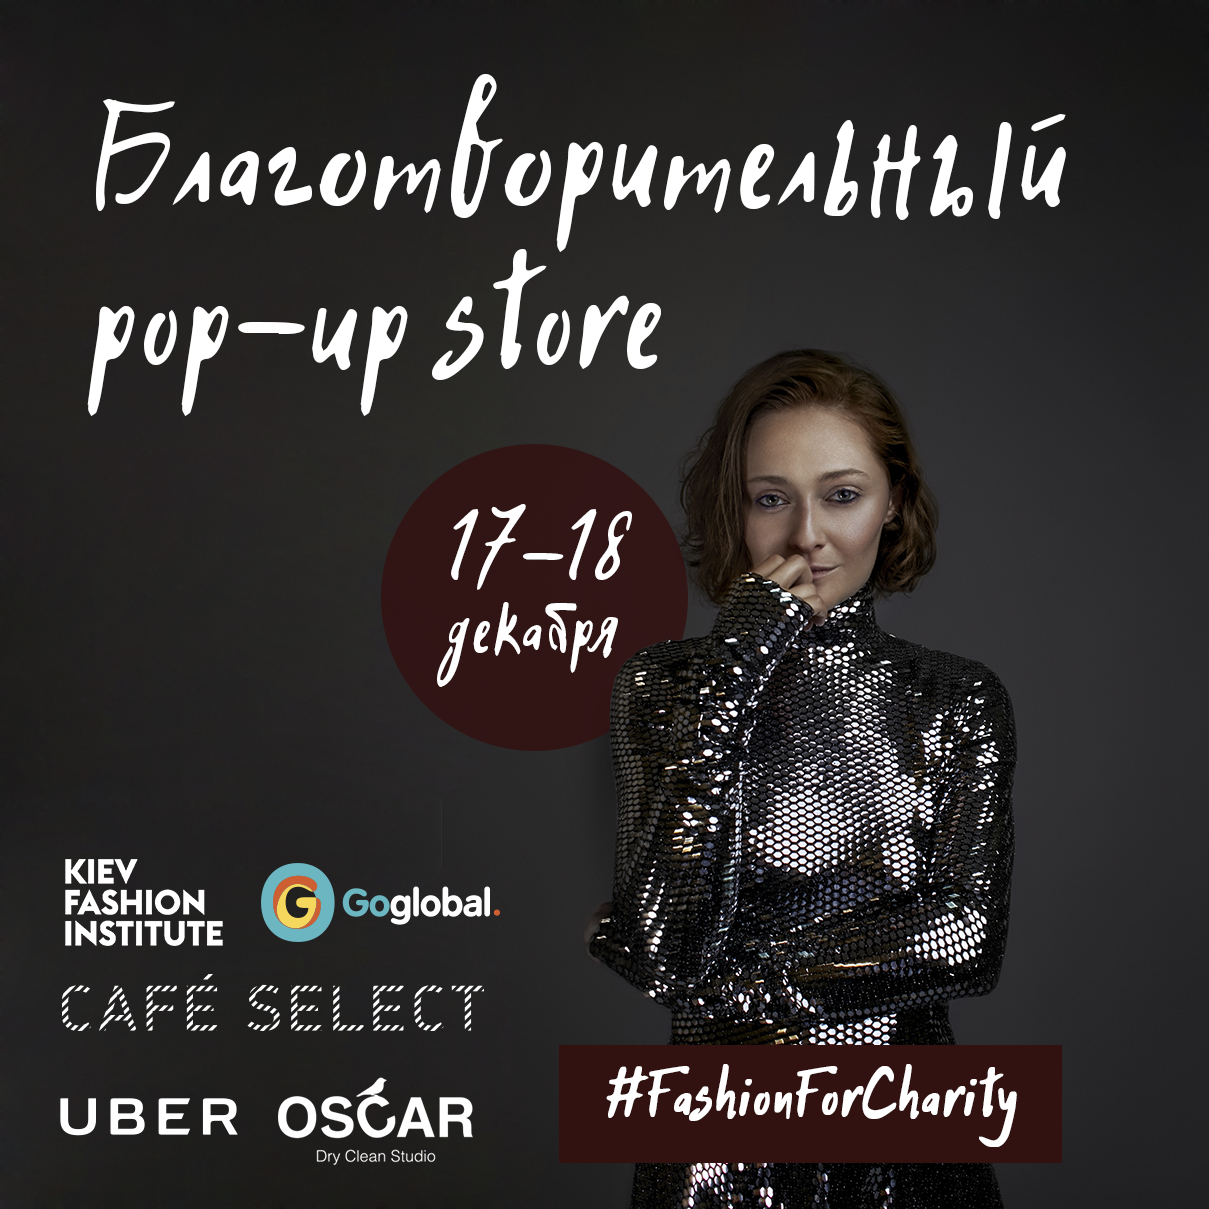 Твори добро: в Киеве пройдет благотворительный pop-up store с дизайнерскими нарядами-320x180